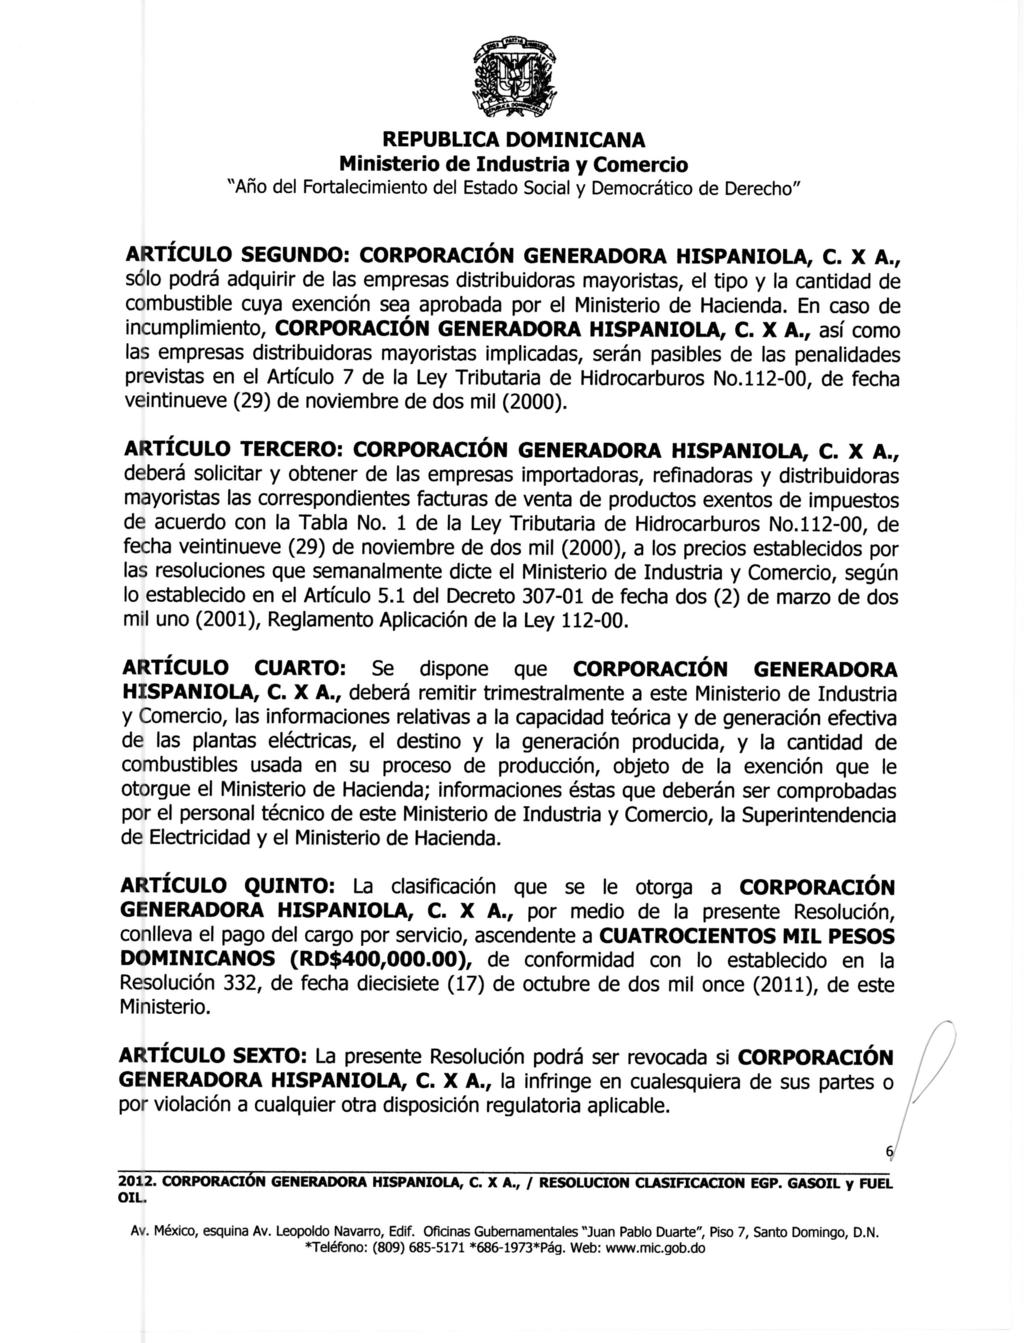 ARTÍCULO SEGUNDO: CORPORACIÓN GENERADORA HISPANIOLA, C. X A.